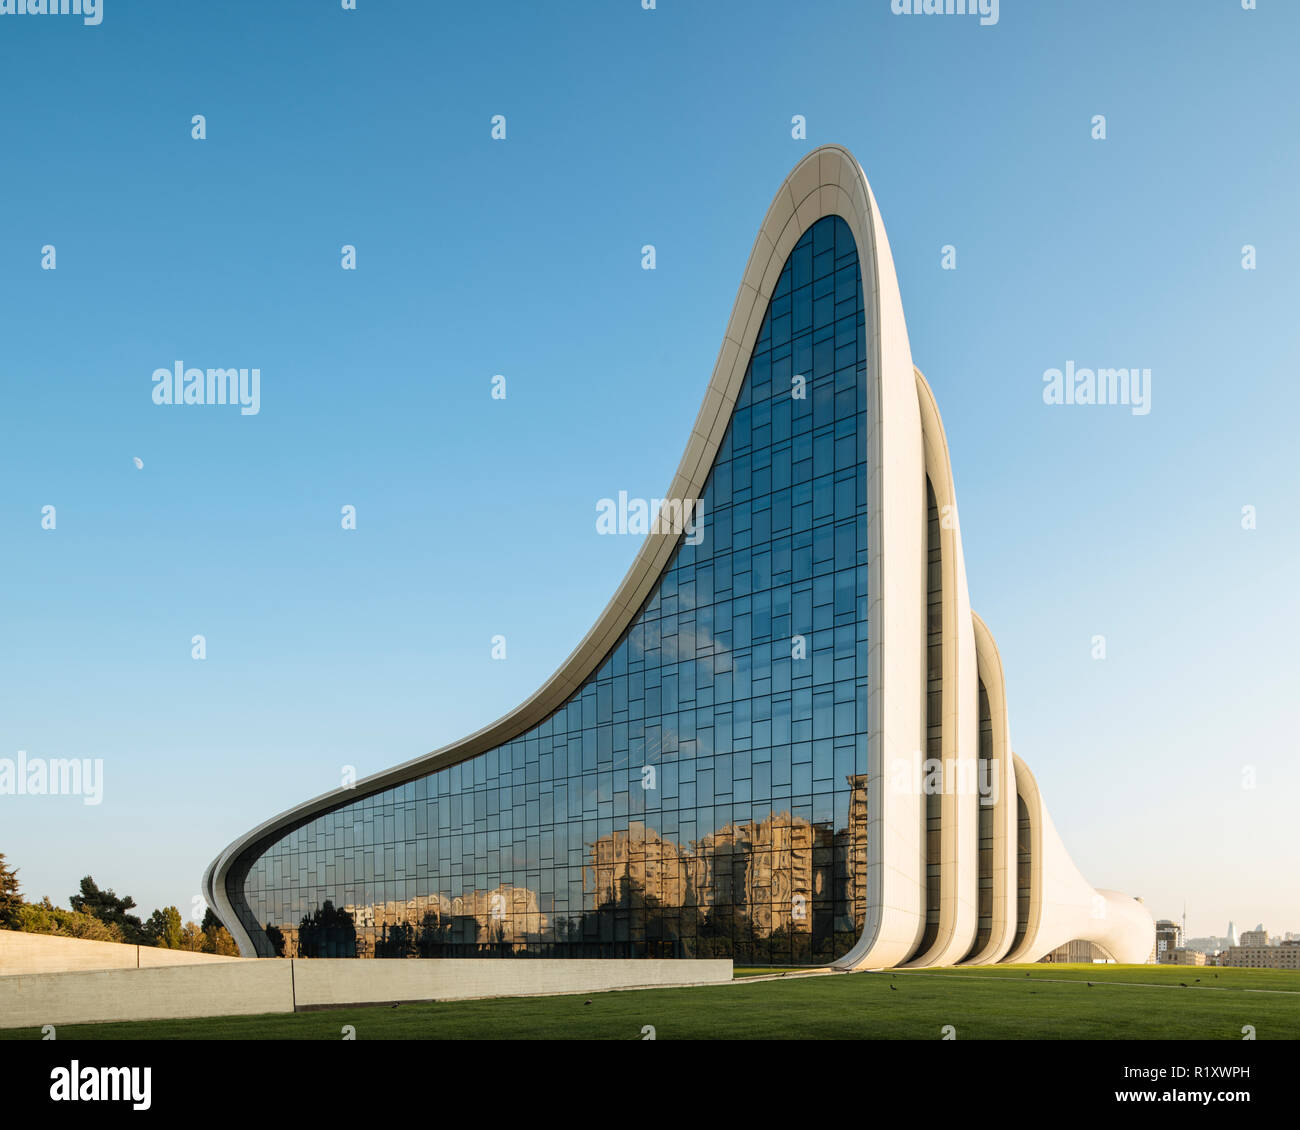 Die Außenseite des Heydar Aliyev Gebäude von Zaha Hadid, Baku, Aserbaidschan konzipiert Stockfoto